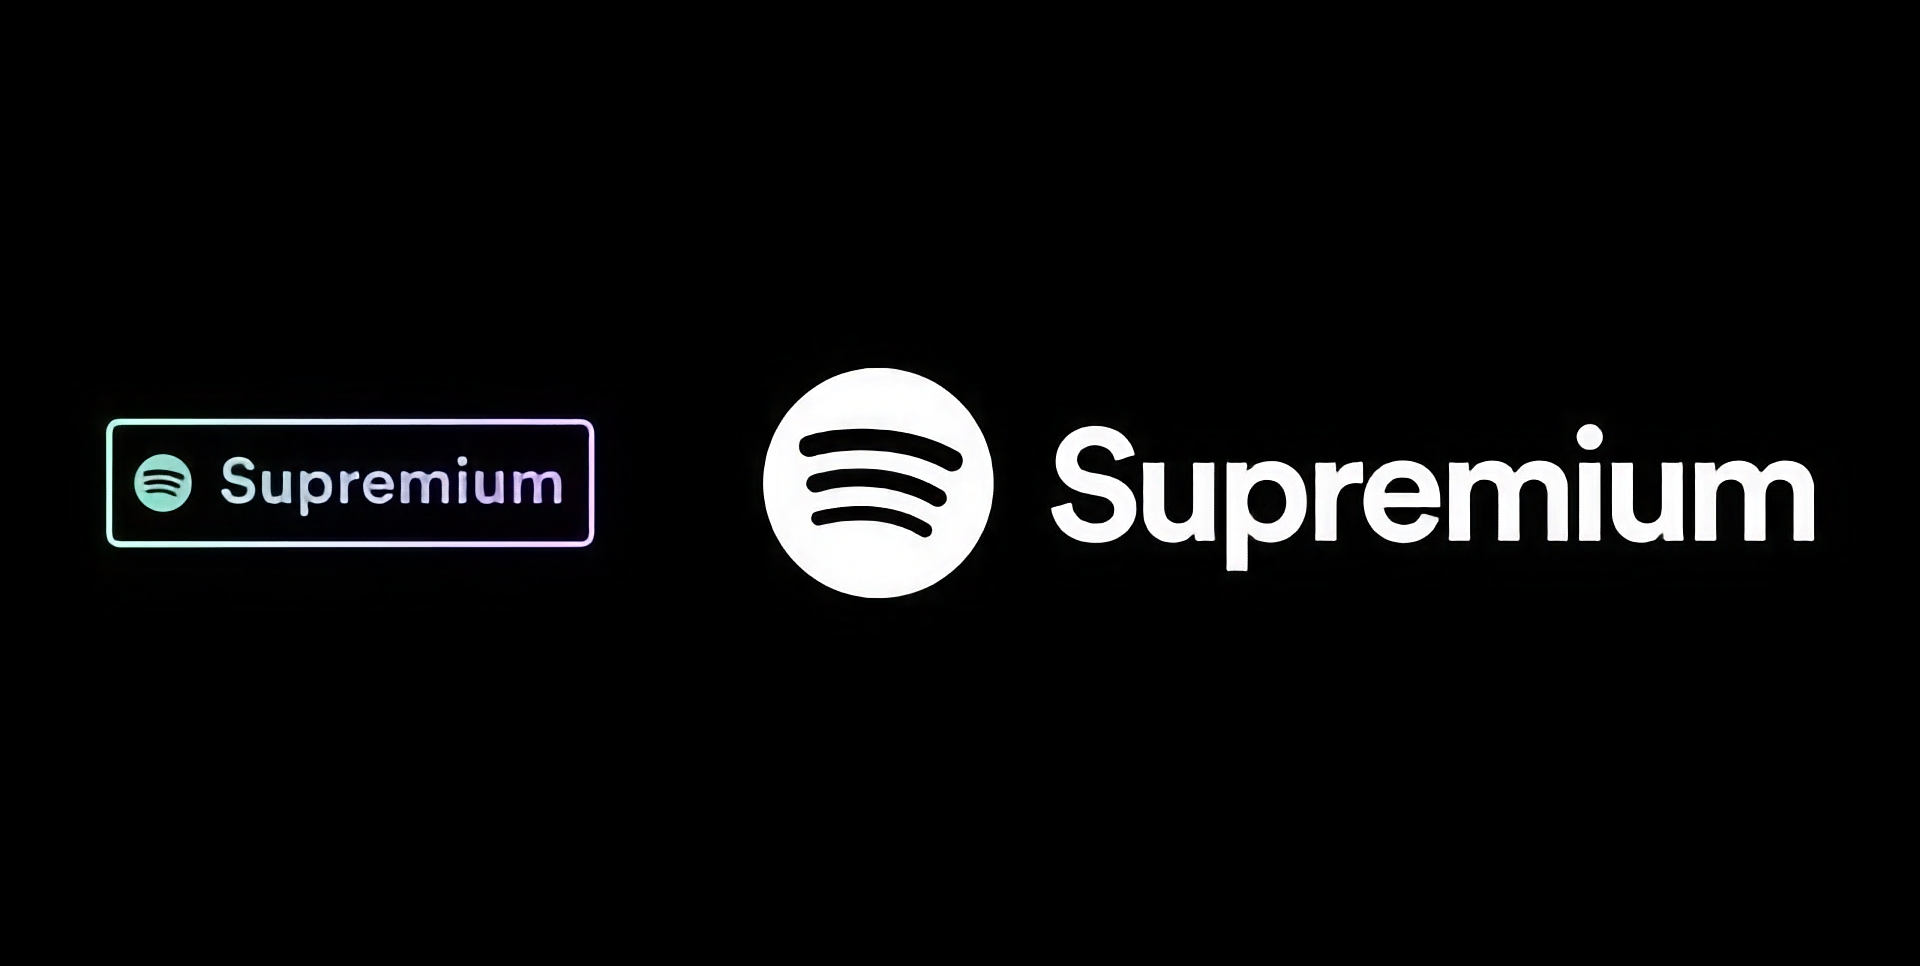 Spotify przygotowuje się do wydania planu Supremium z obsługą dźwięku Lossless i ceną 19 USD miesięcznie